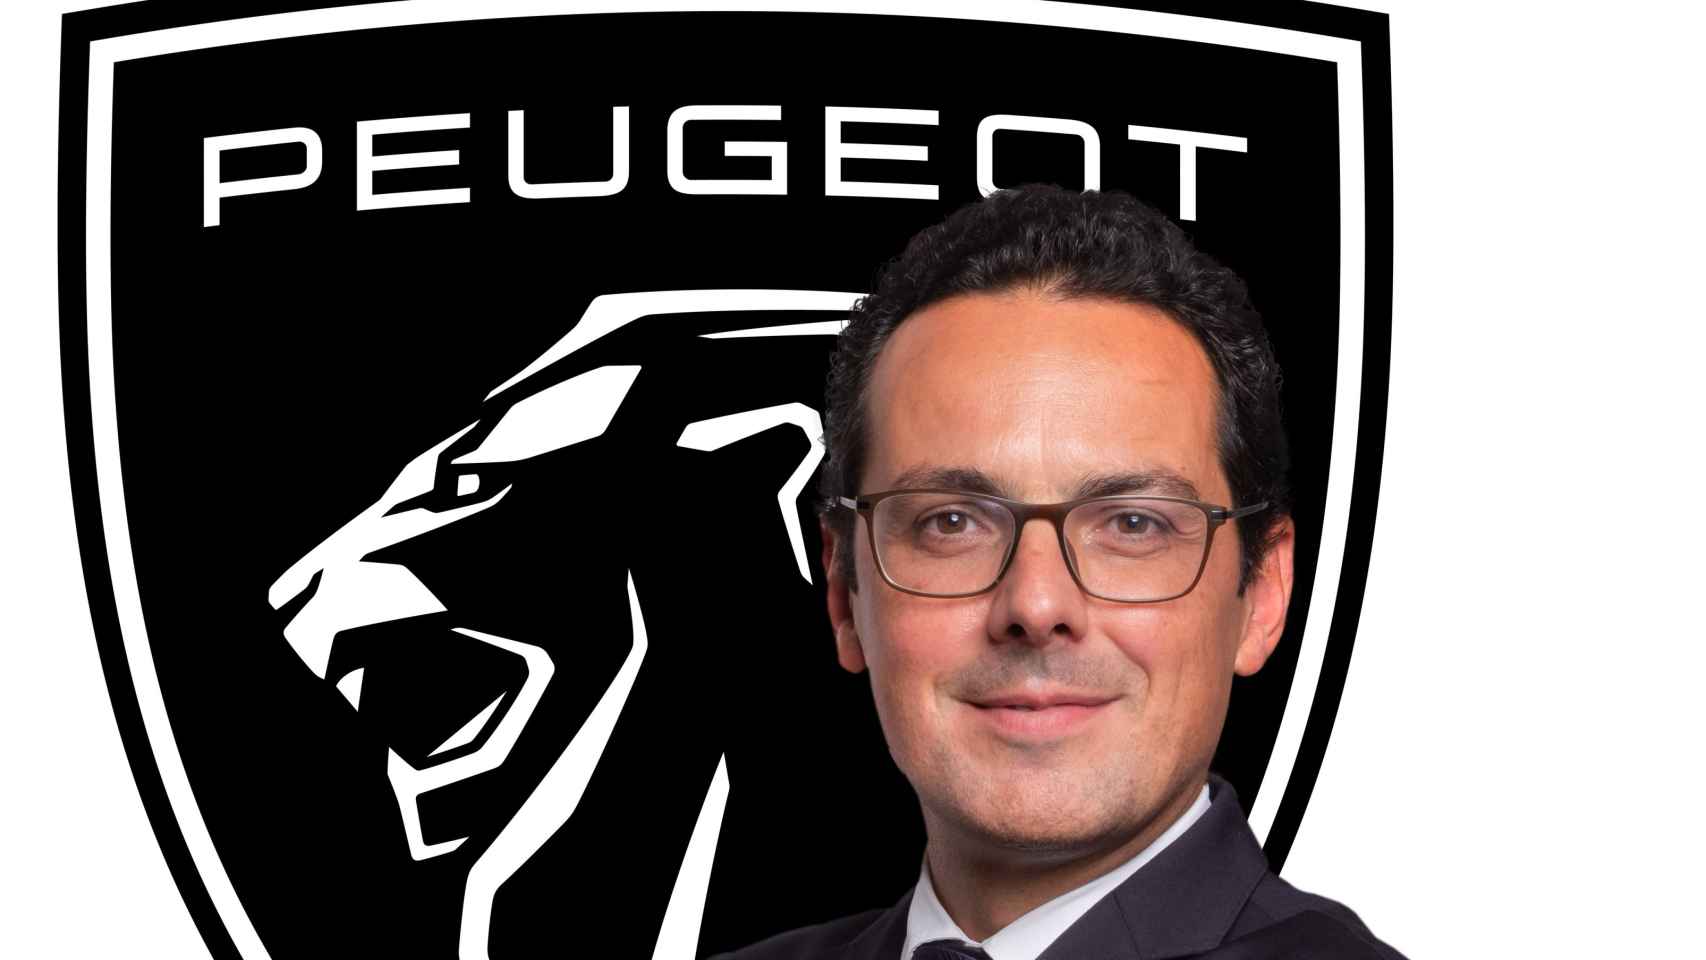 Joao Mendes, director de Peugeot en España y Portugal.